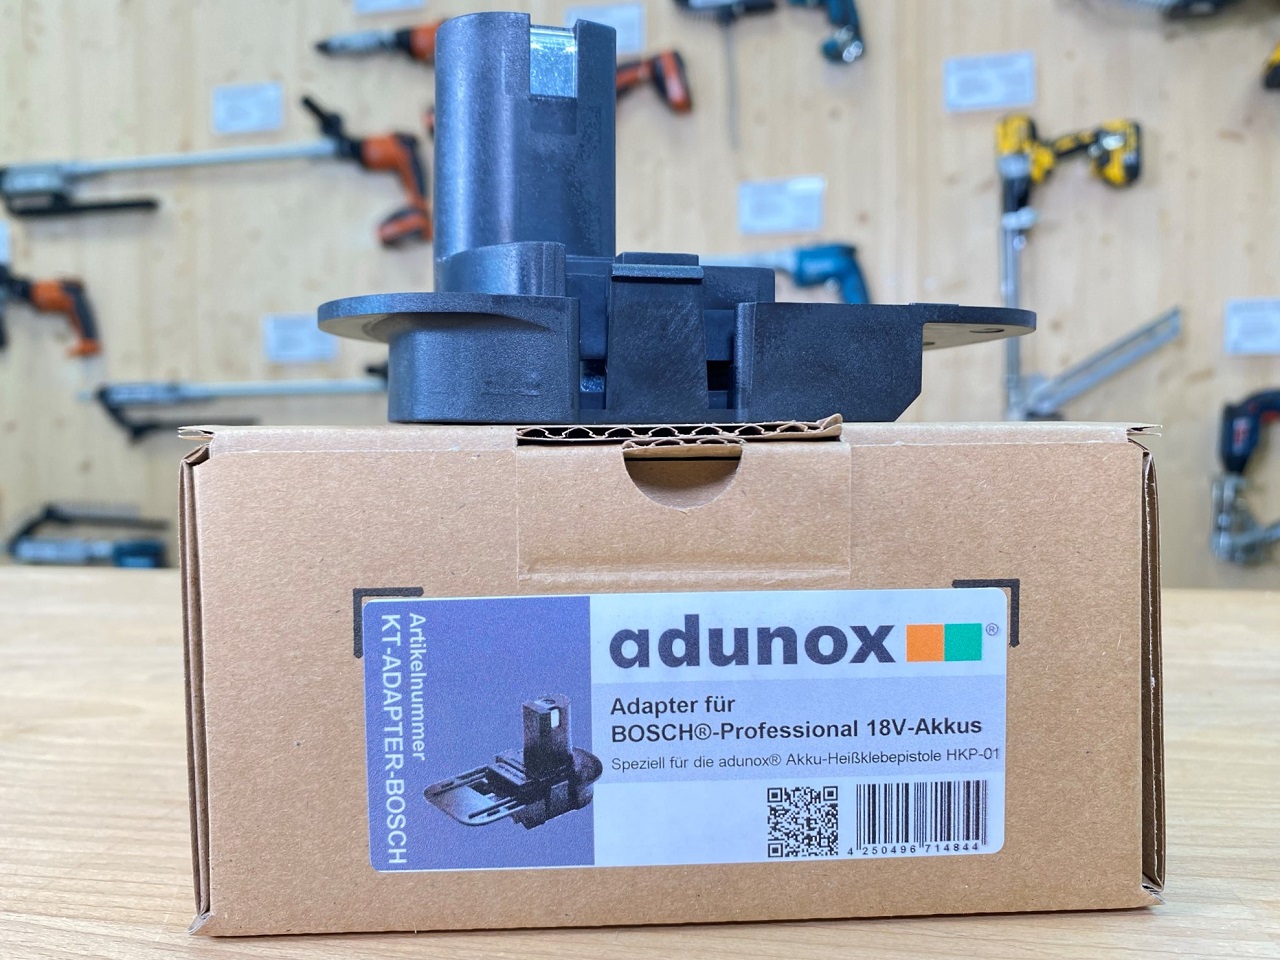 Adapter für Akku-Heißklebepistole HKP-01 | 18V-Akkus von Bosch®-Professional